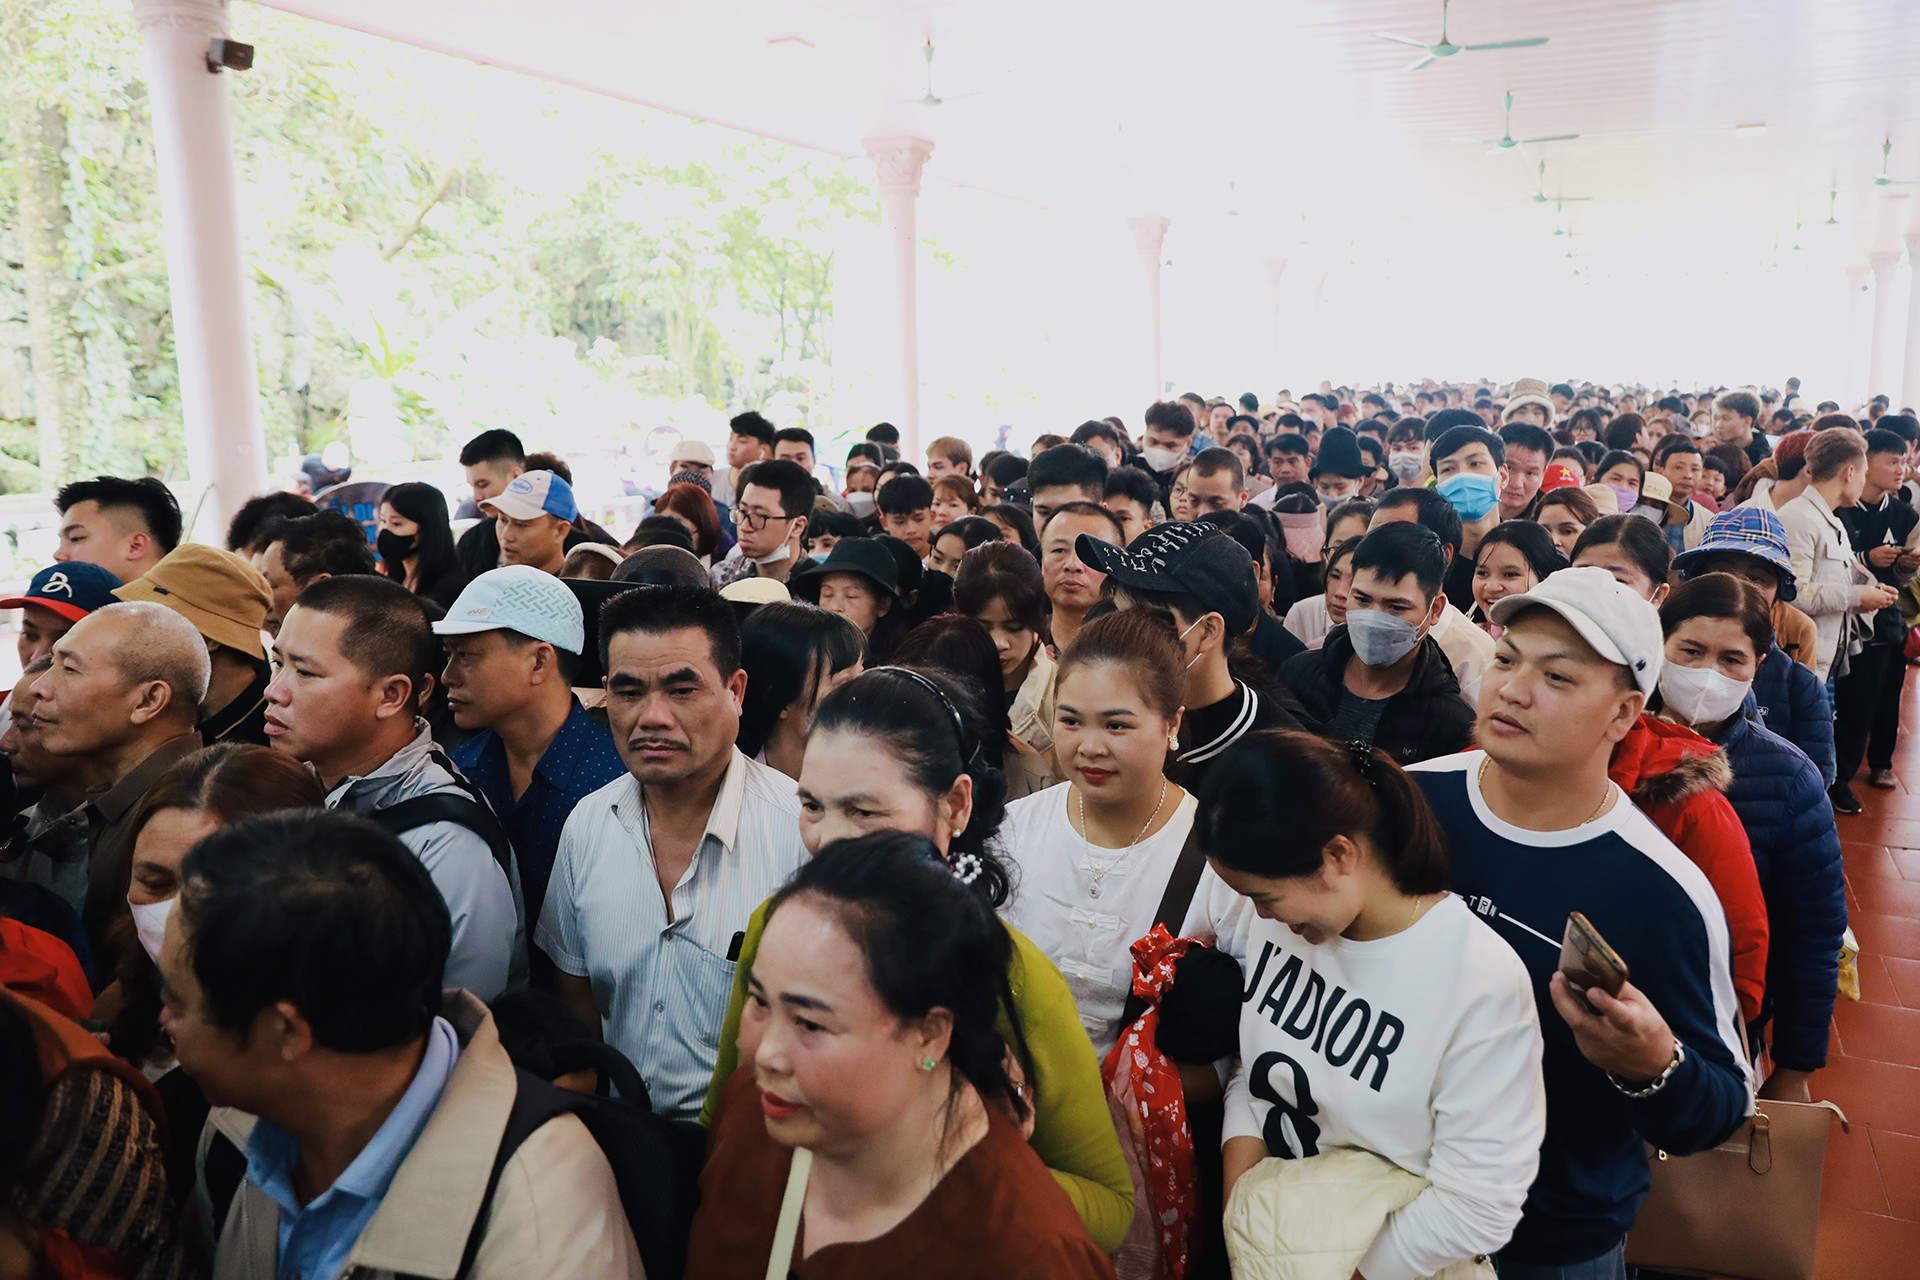 Hàng chục nghìn người cực nhọc chen lấn lên cáp treo chùa Hương-5